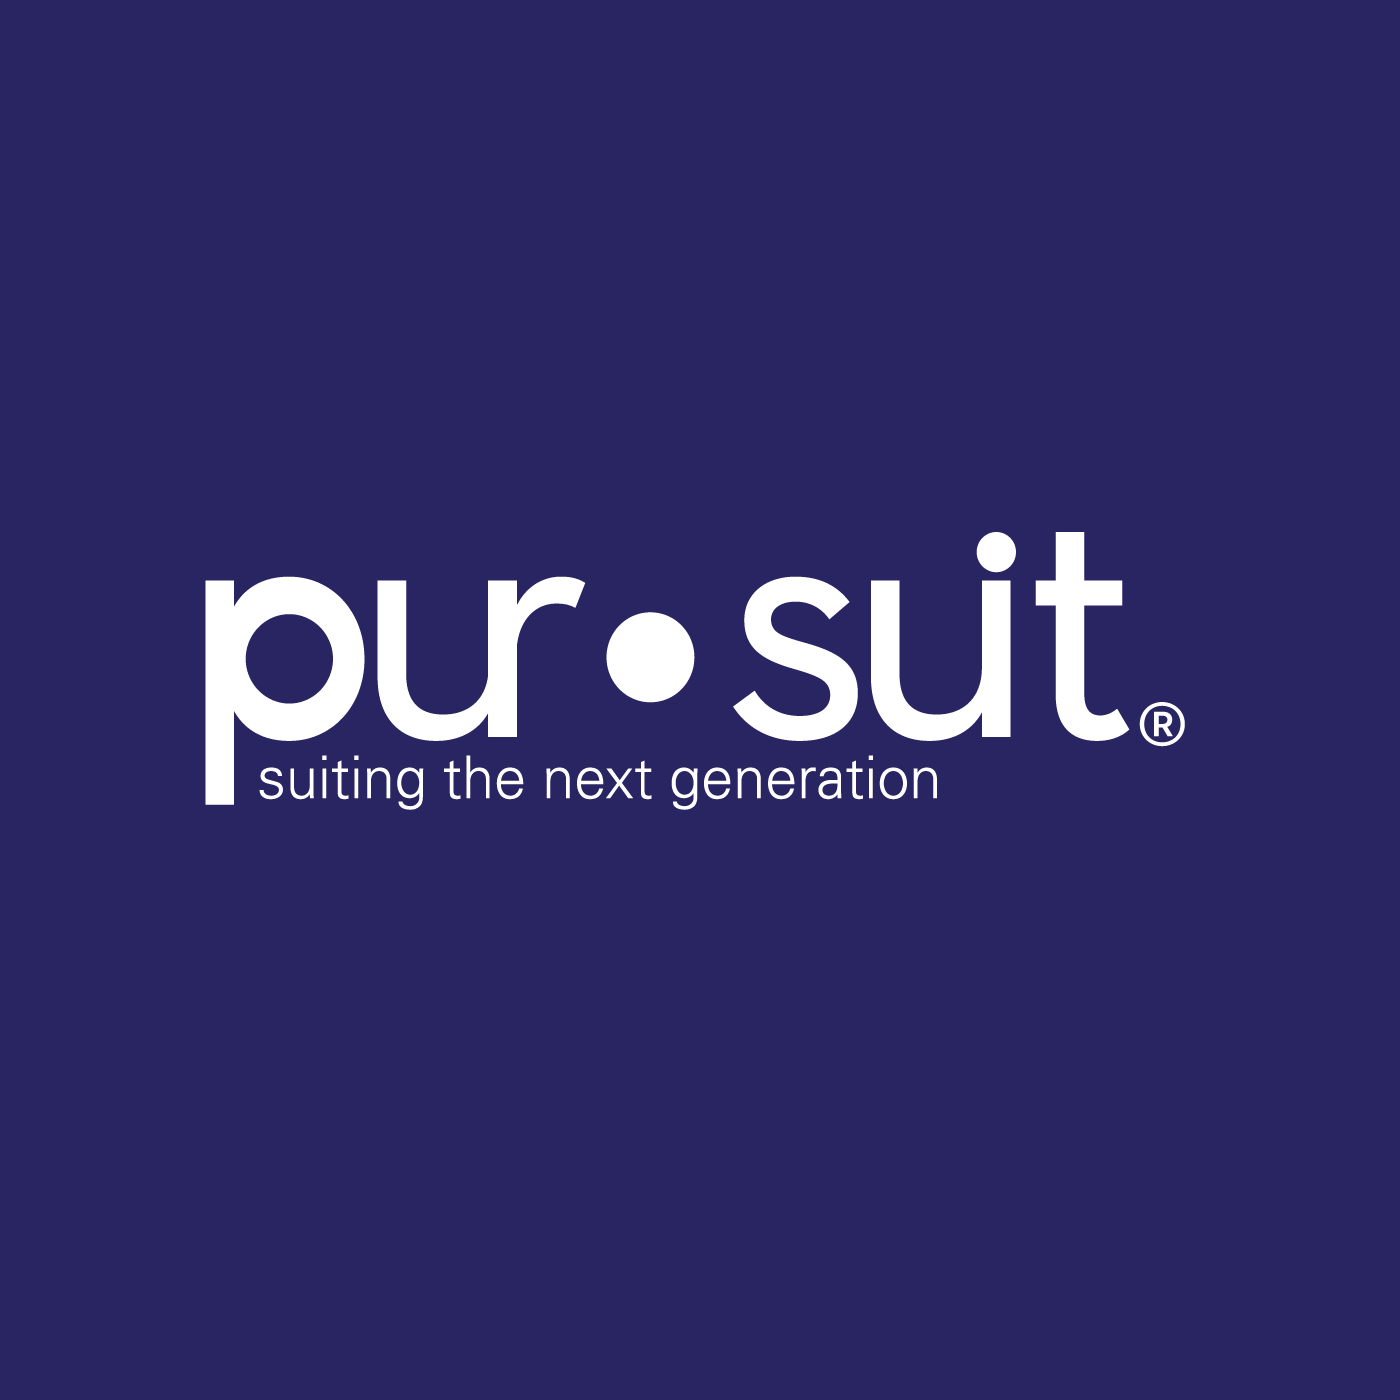 Pursuit Logo - Pursuit Suit Store, Old Fashioned Service